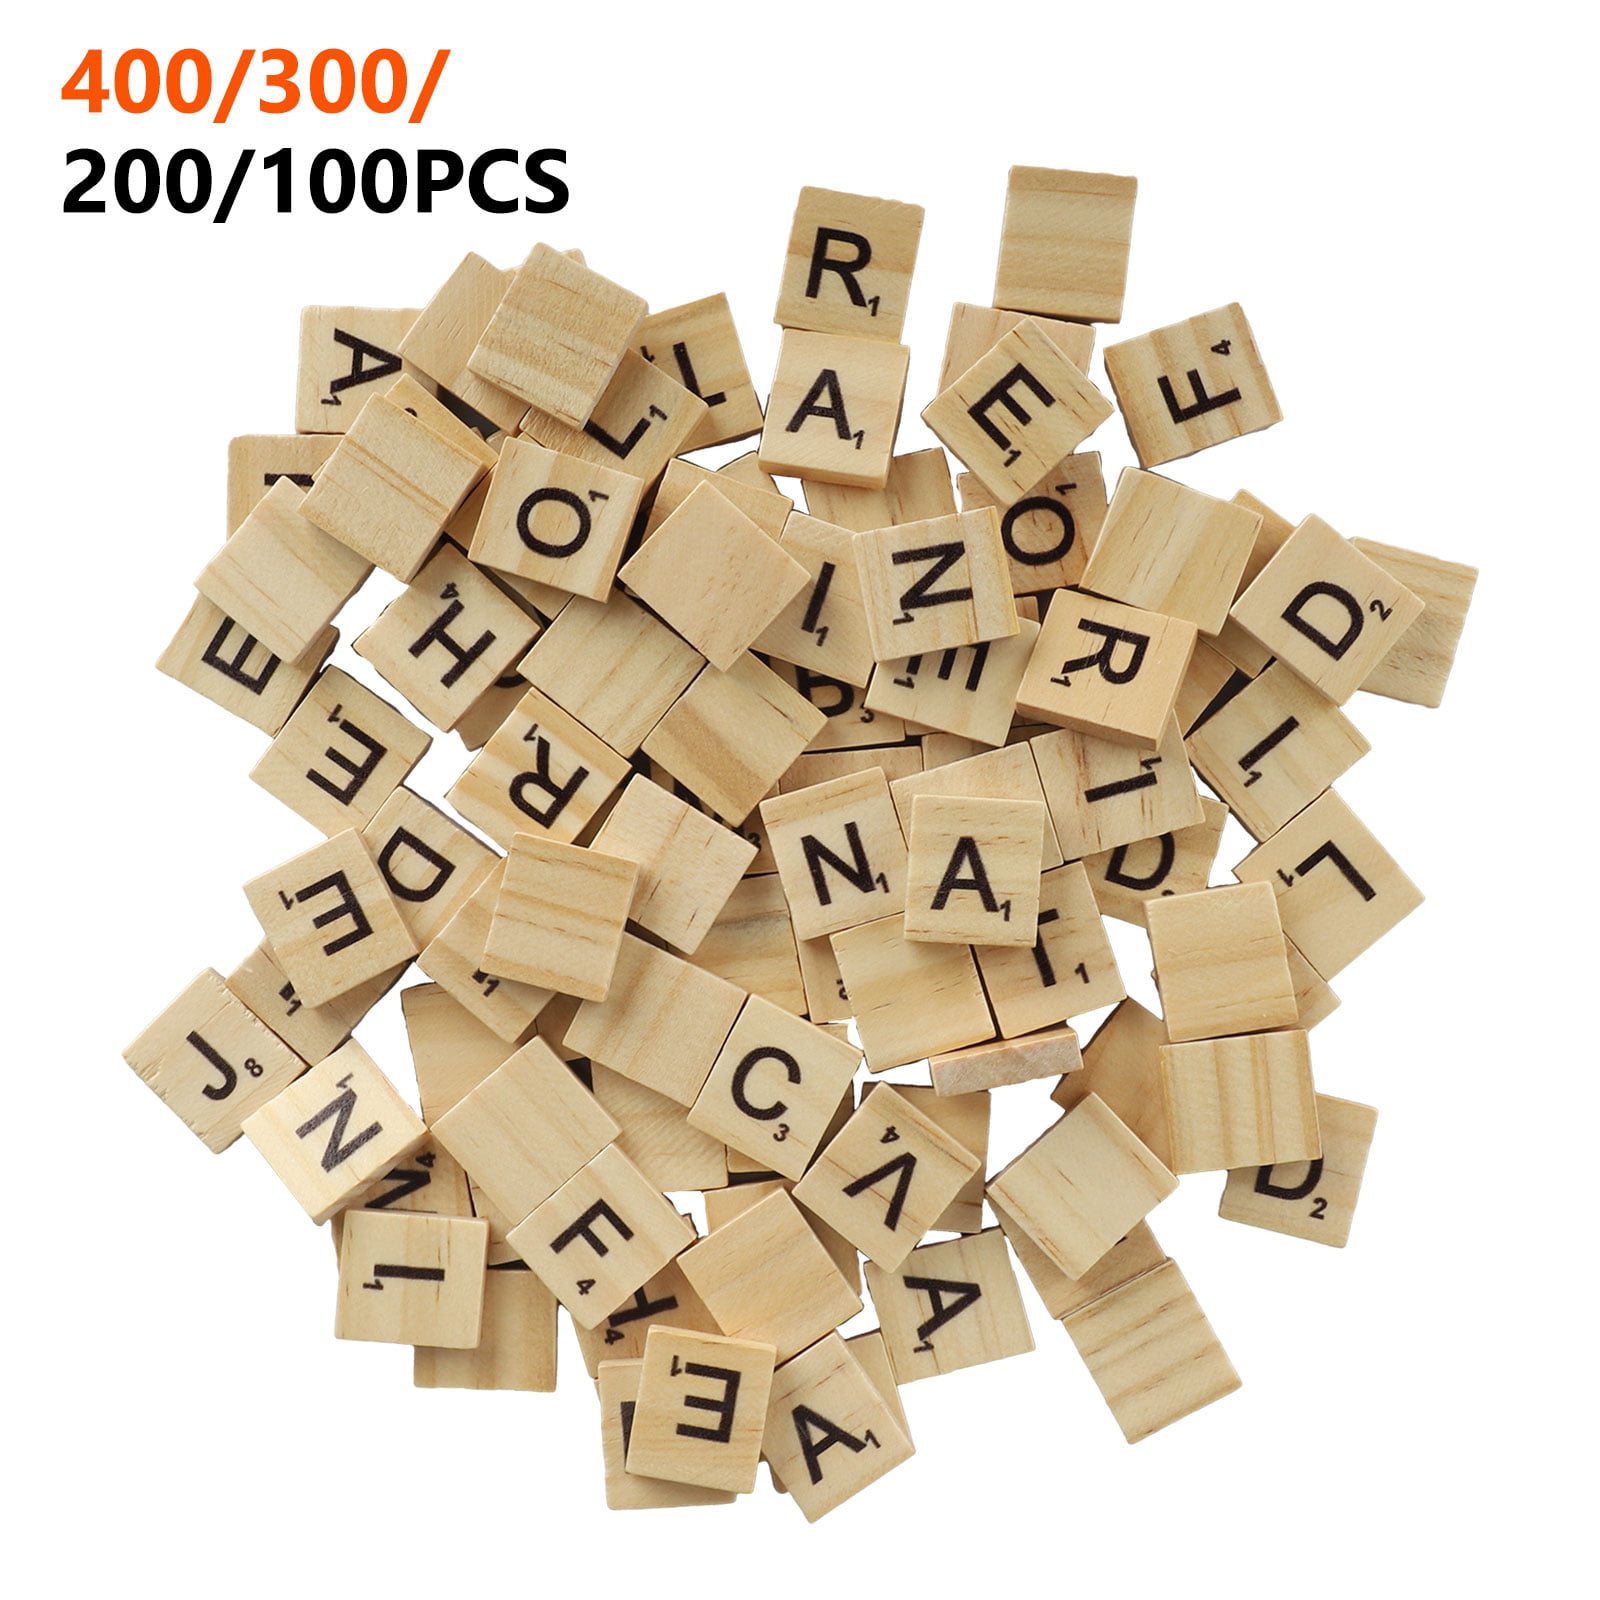 400 300 200 100pcs Wood Scrabble Tiles